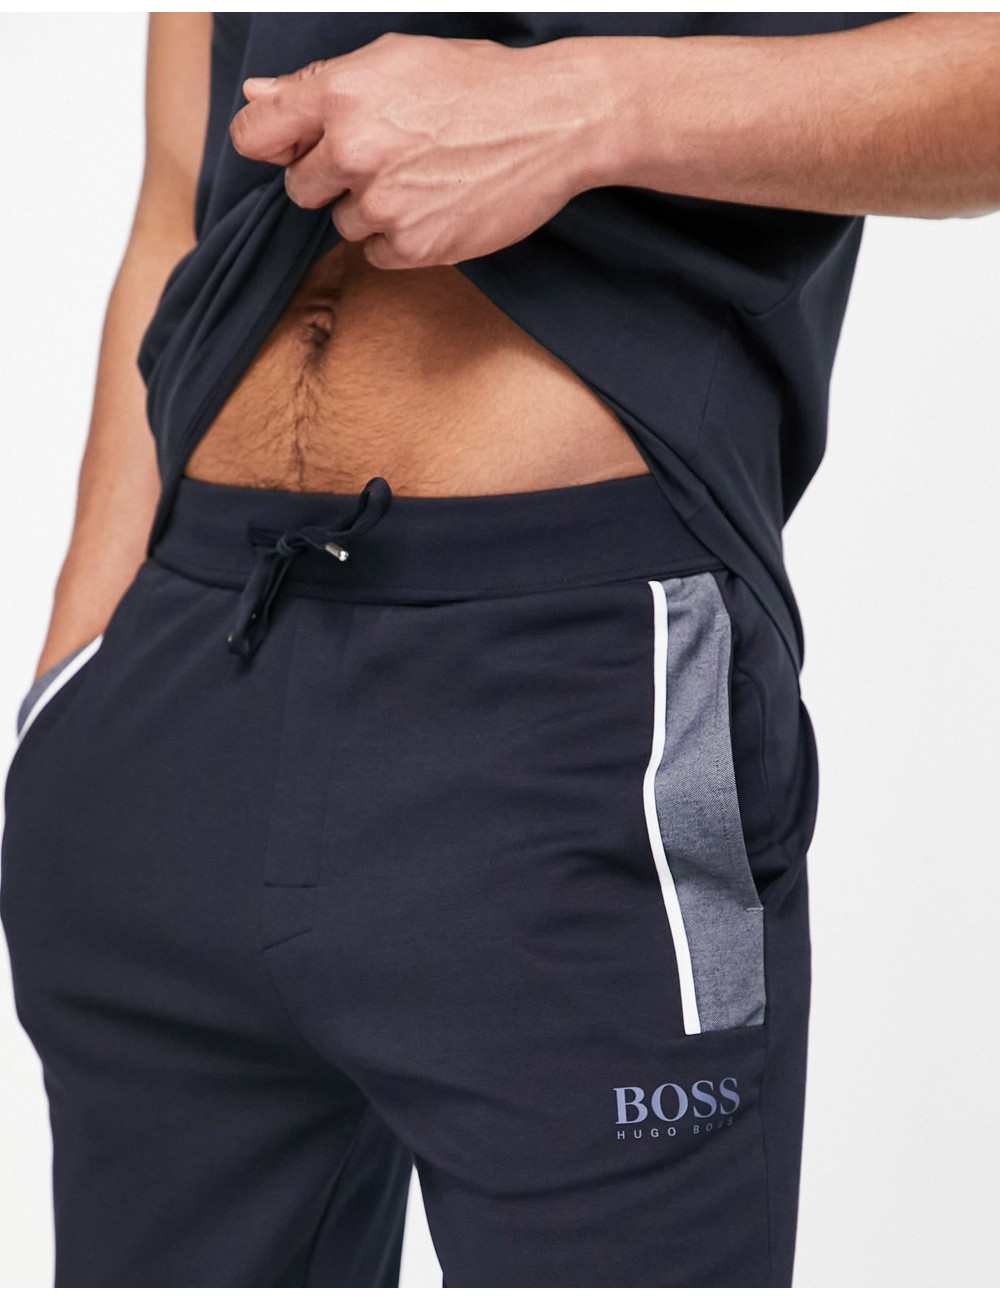 BOSS Bodywear joggers with...